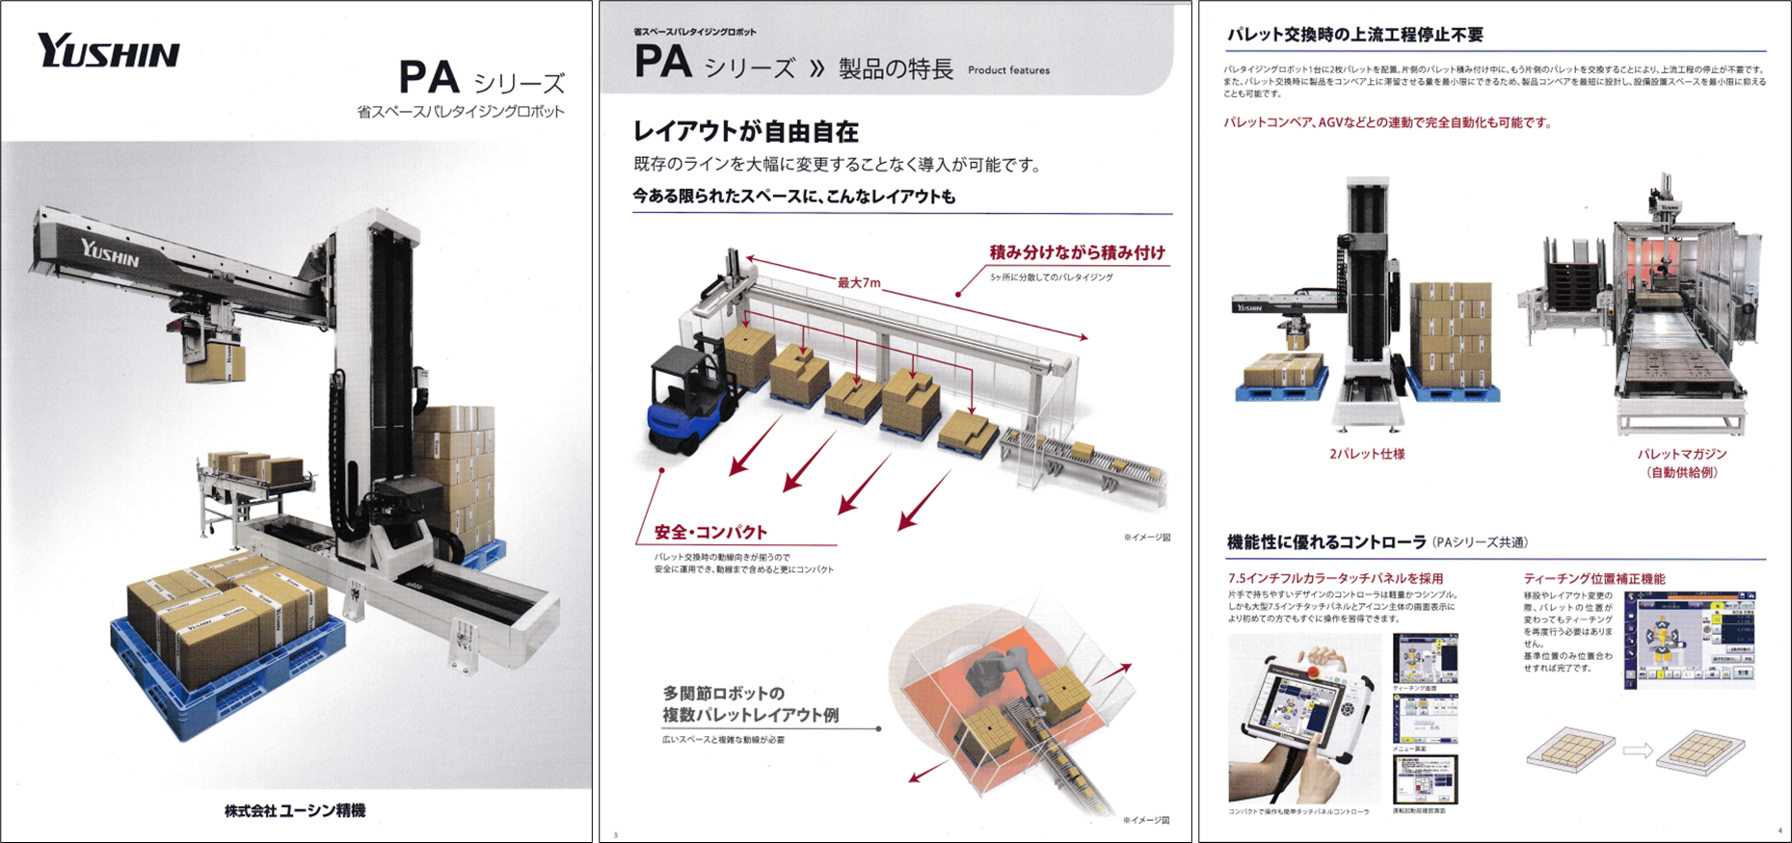 写真3 - 15 - 2. 省スペースパレタイジングロボット「PAシリーズ」のカタログ抜粋